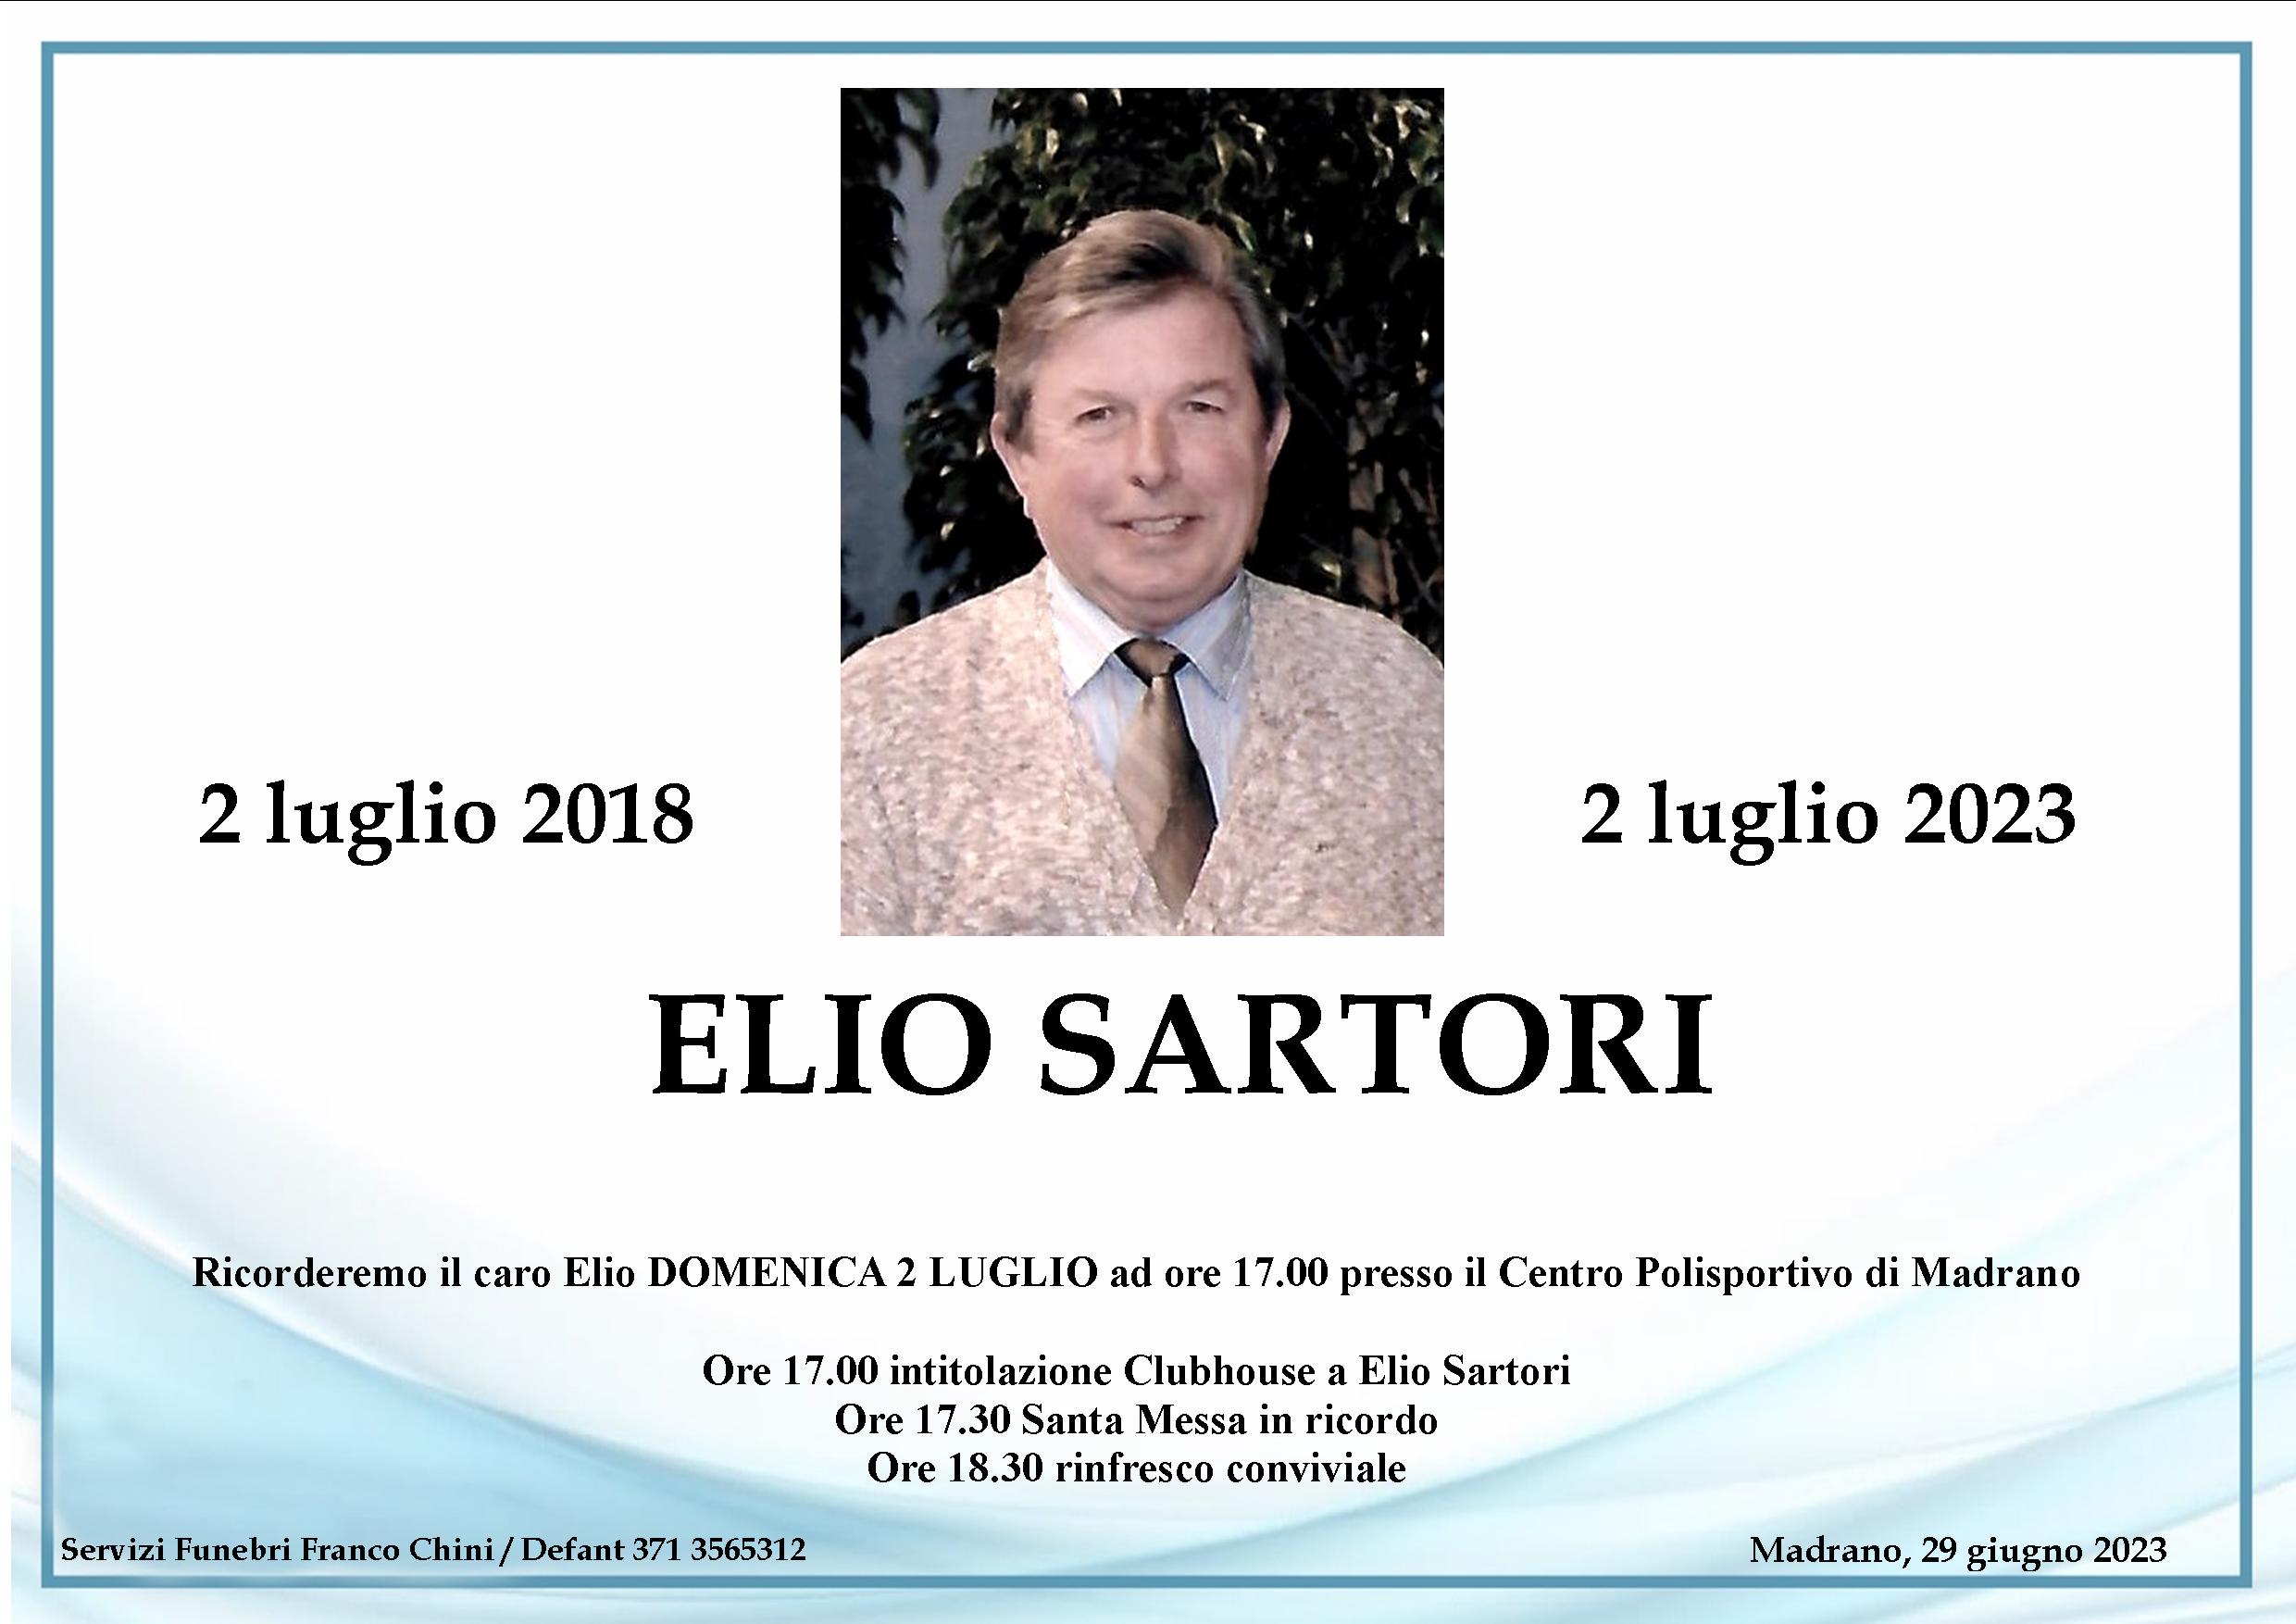 Elio Sartori